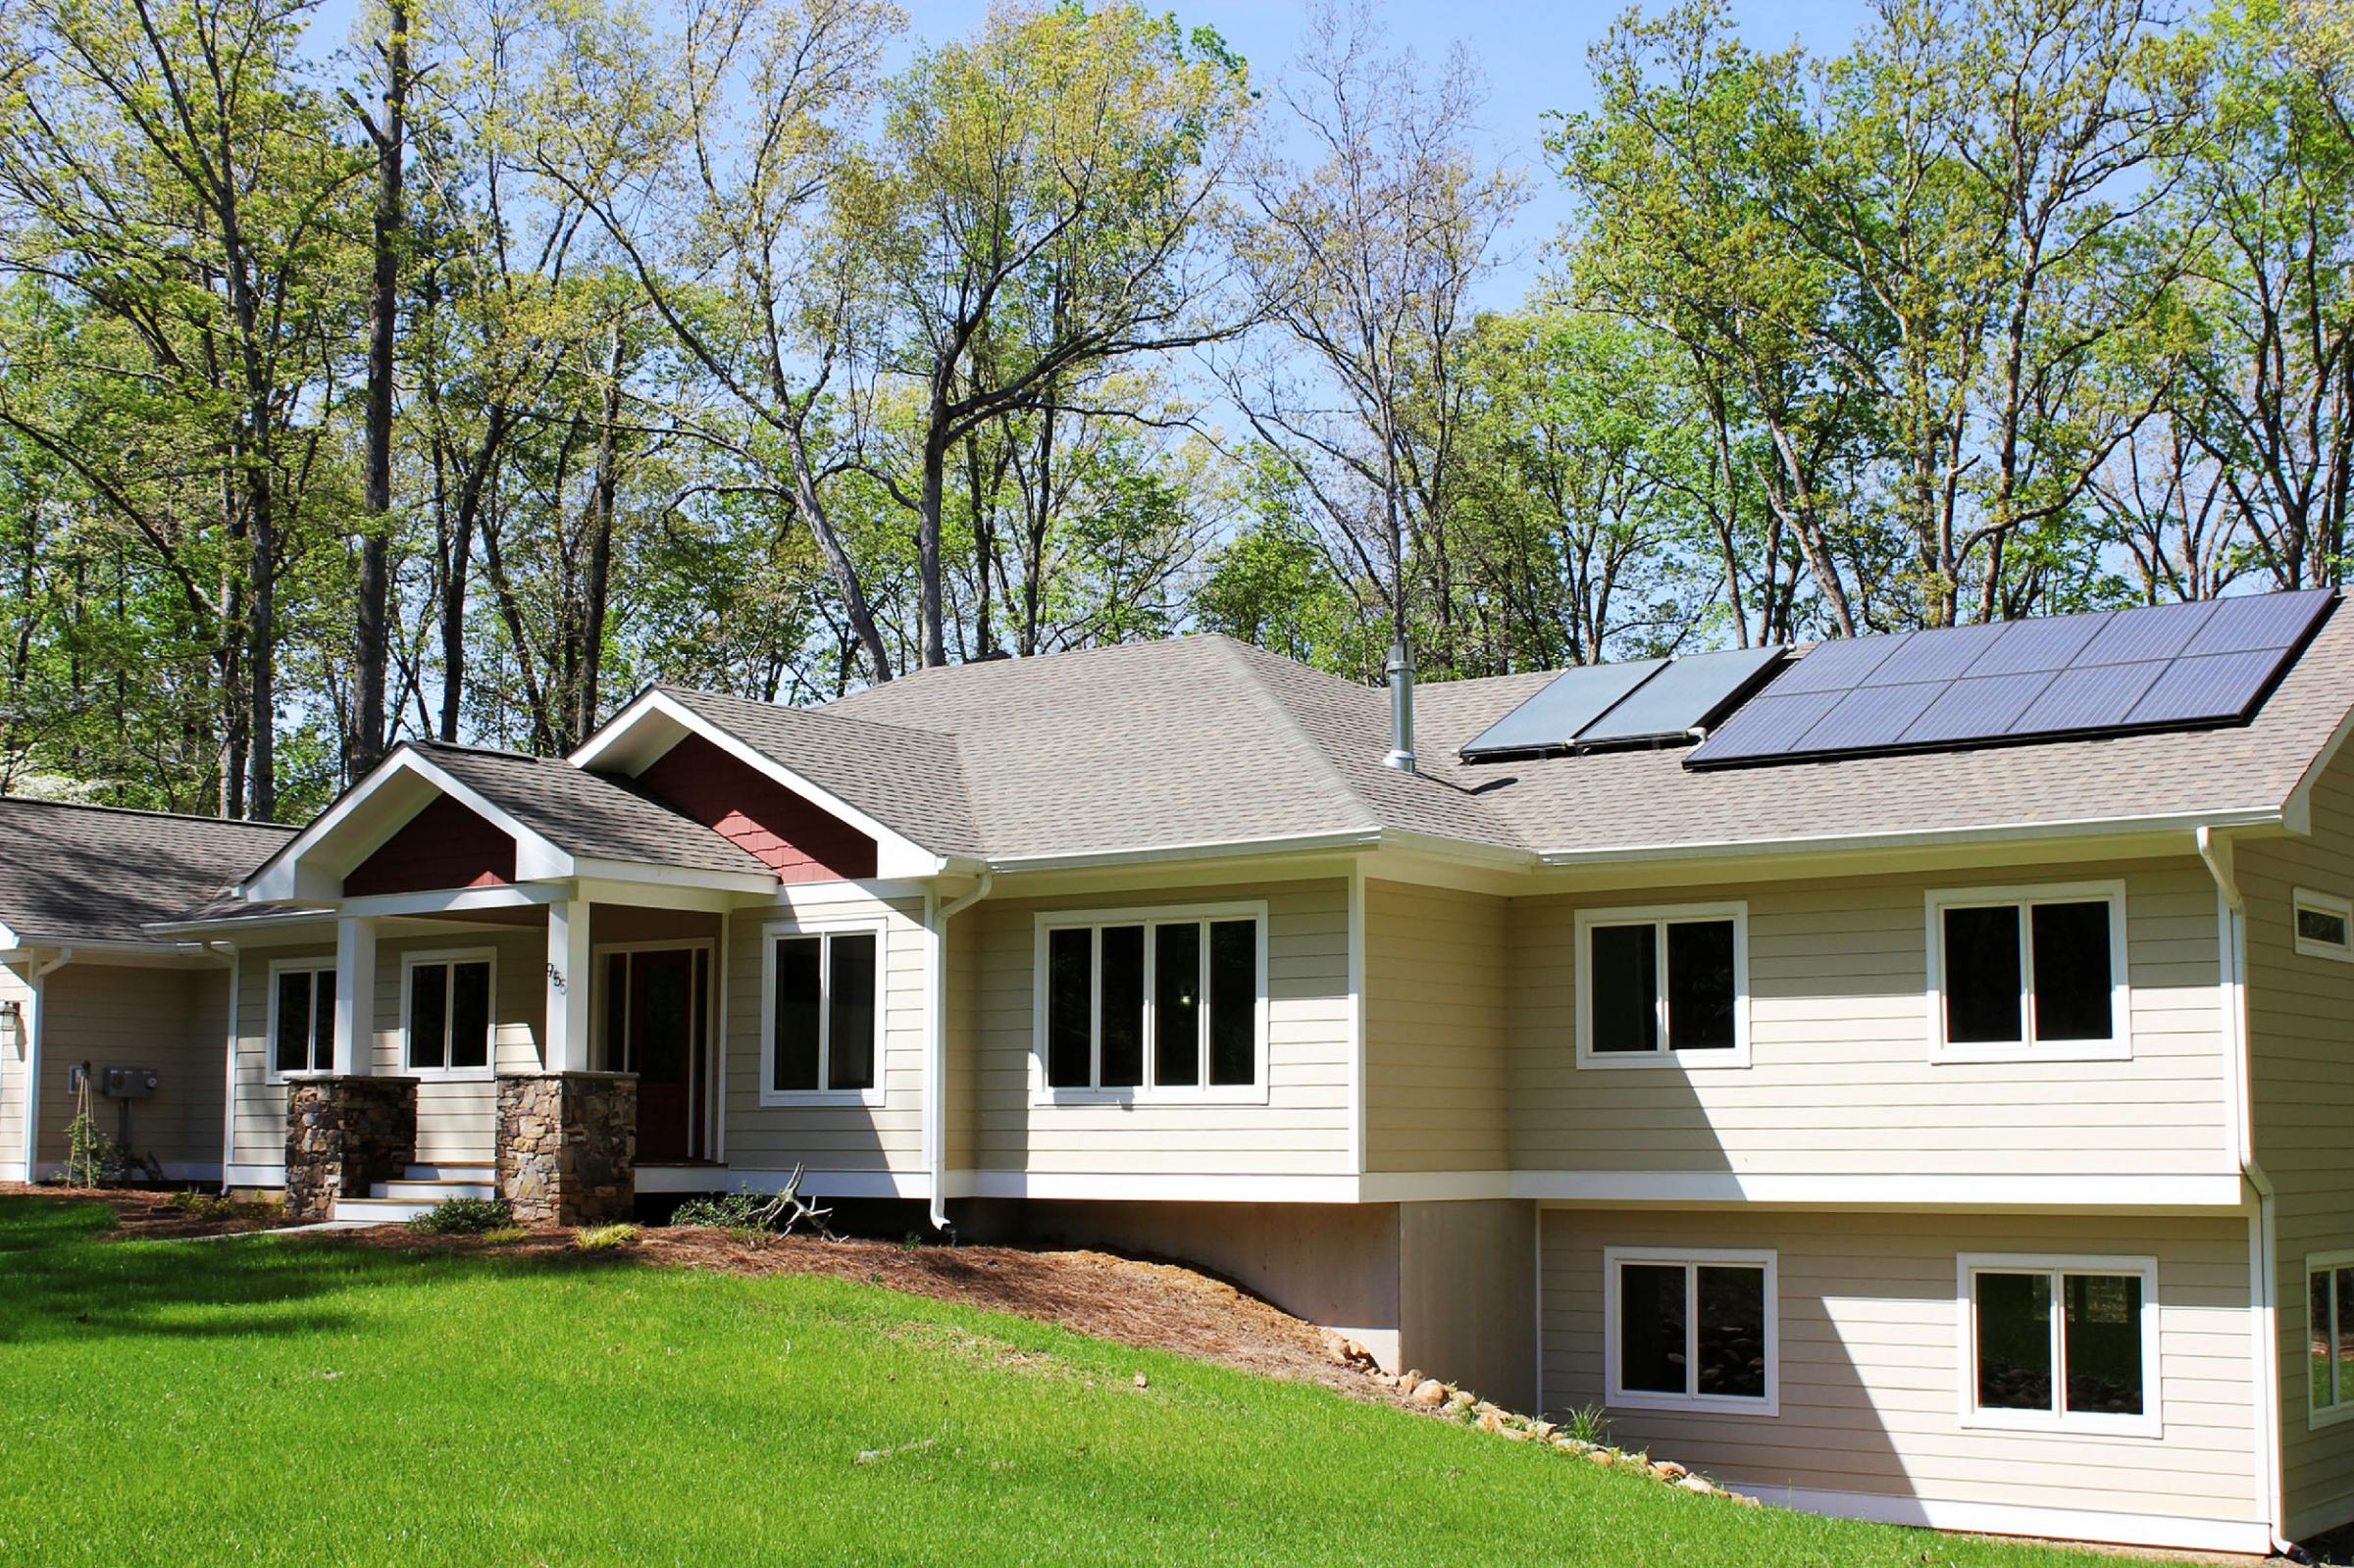 duke-energy-s-2019-home-solar-rebates-gone-in-2-days-wunc